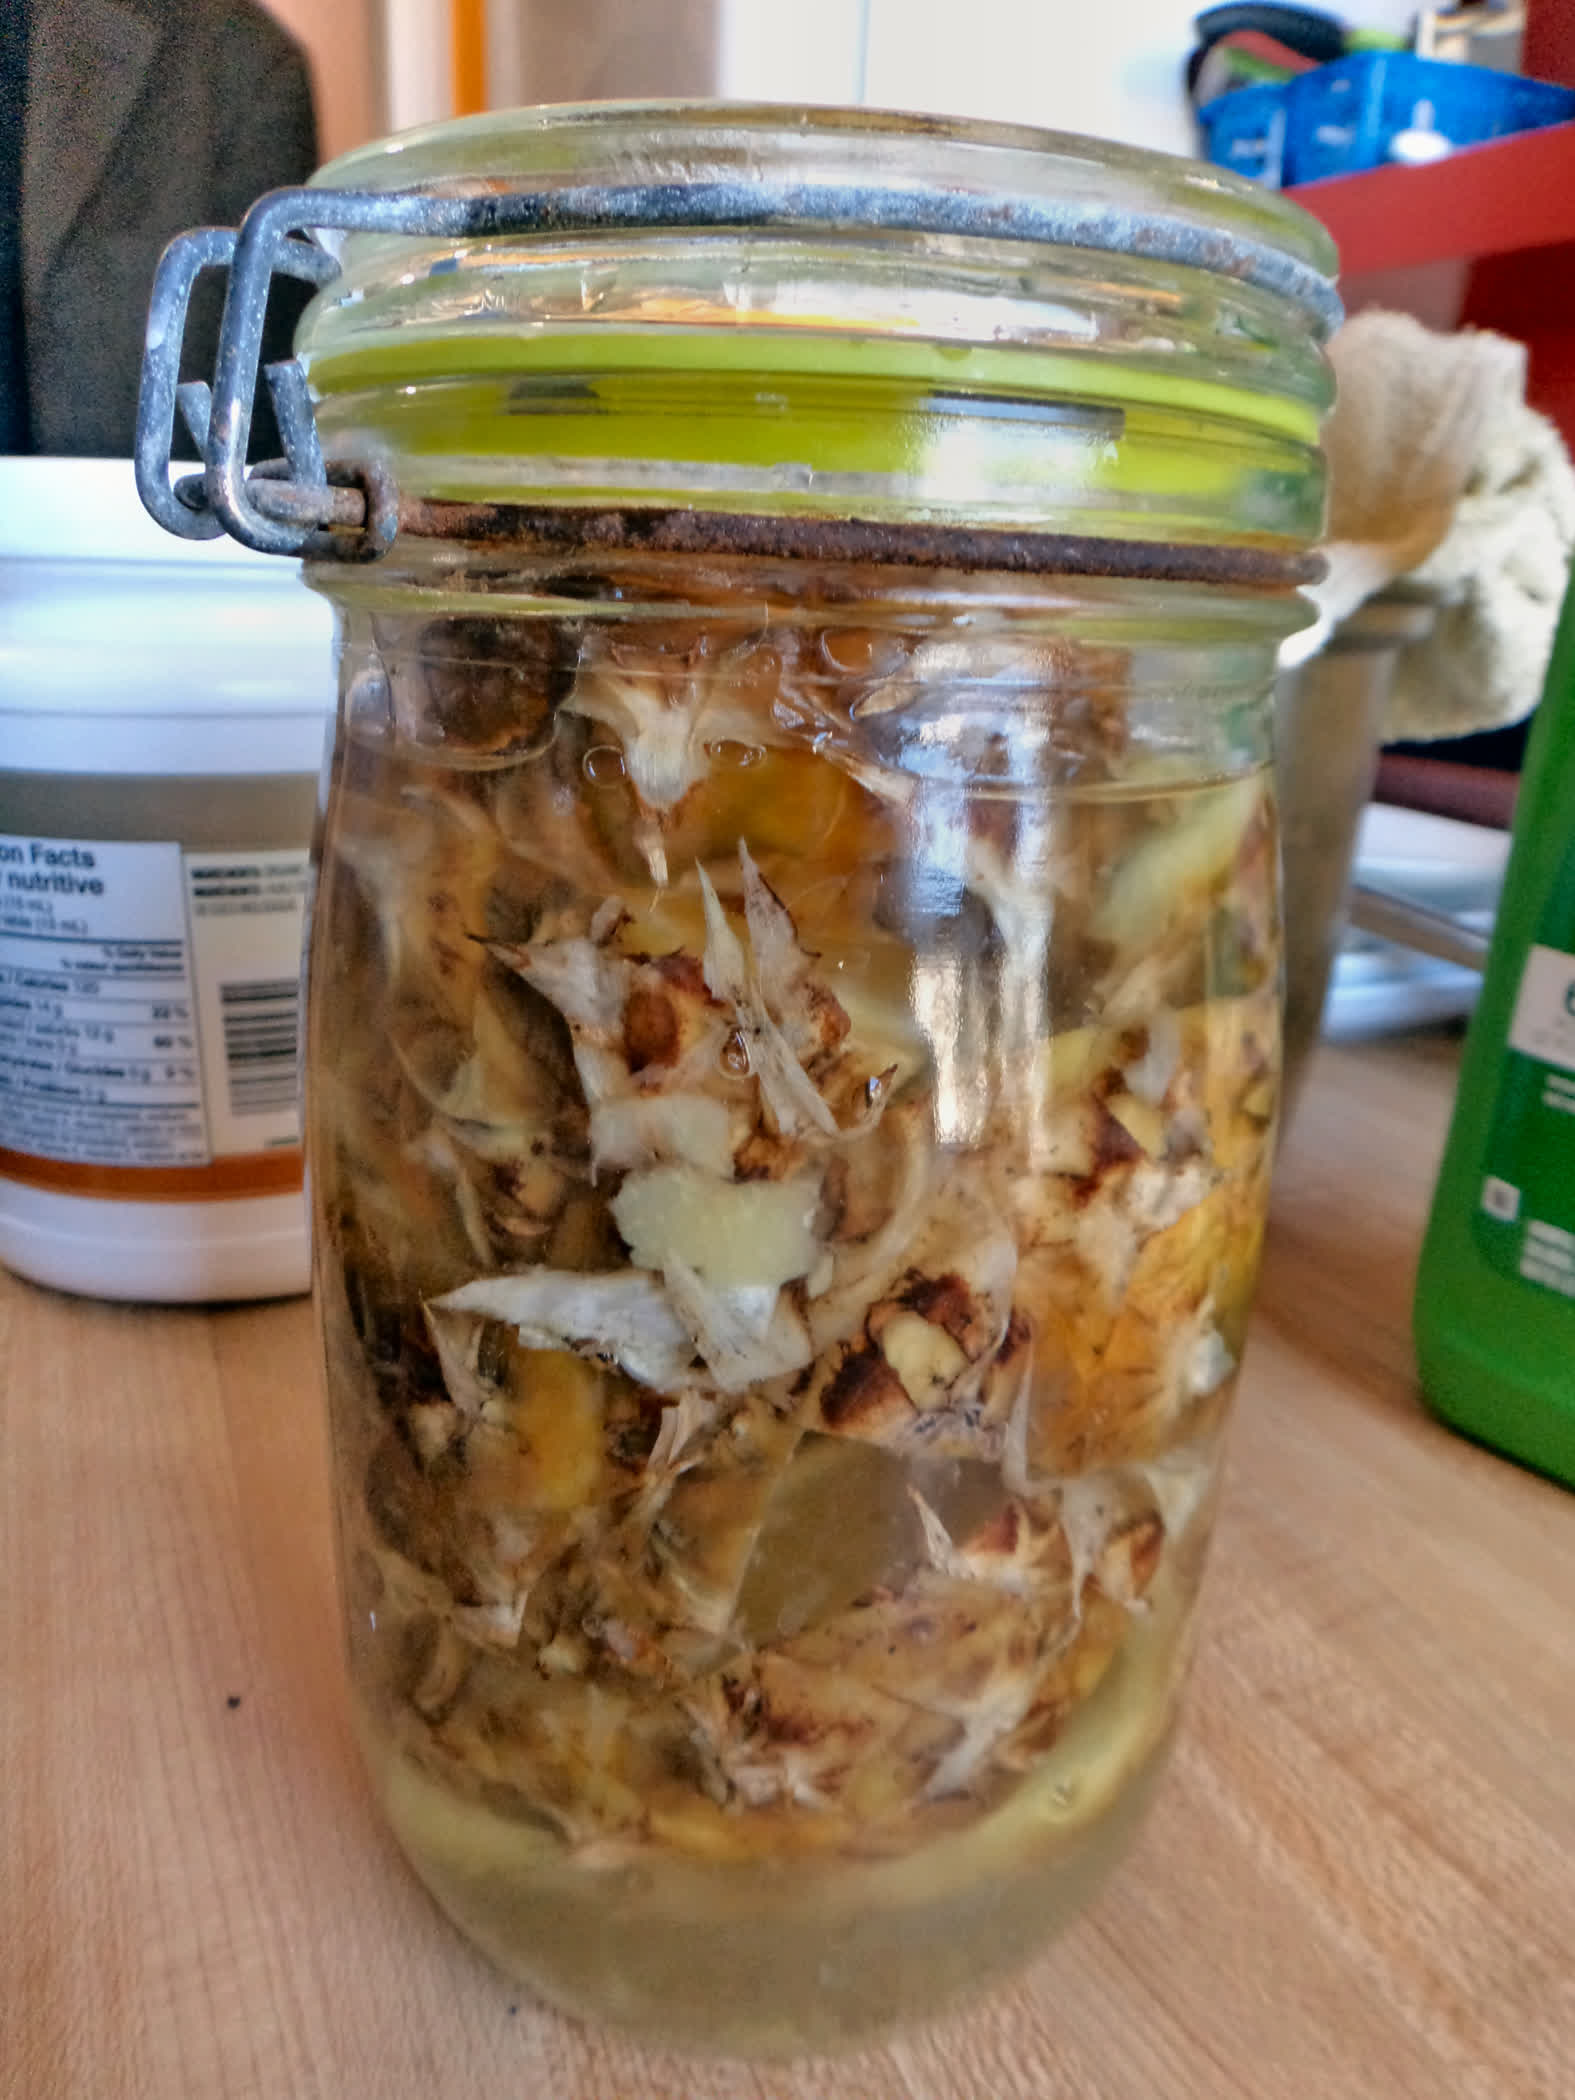 Pineapple fermenting